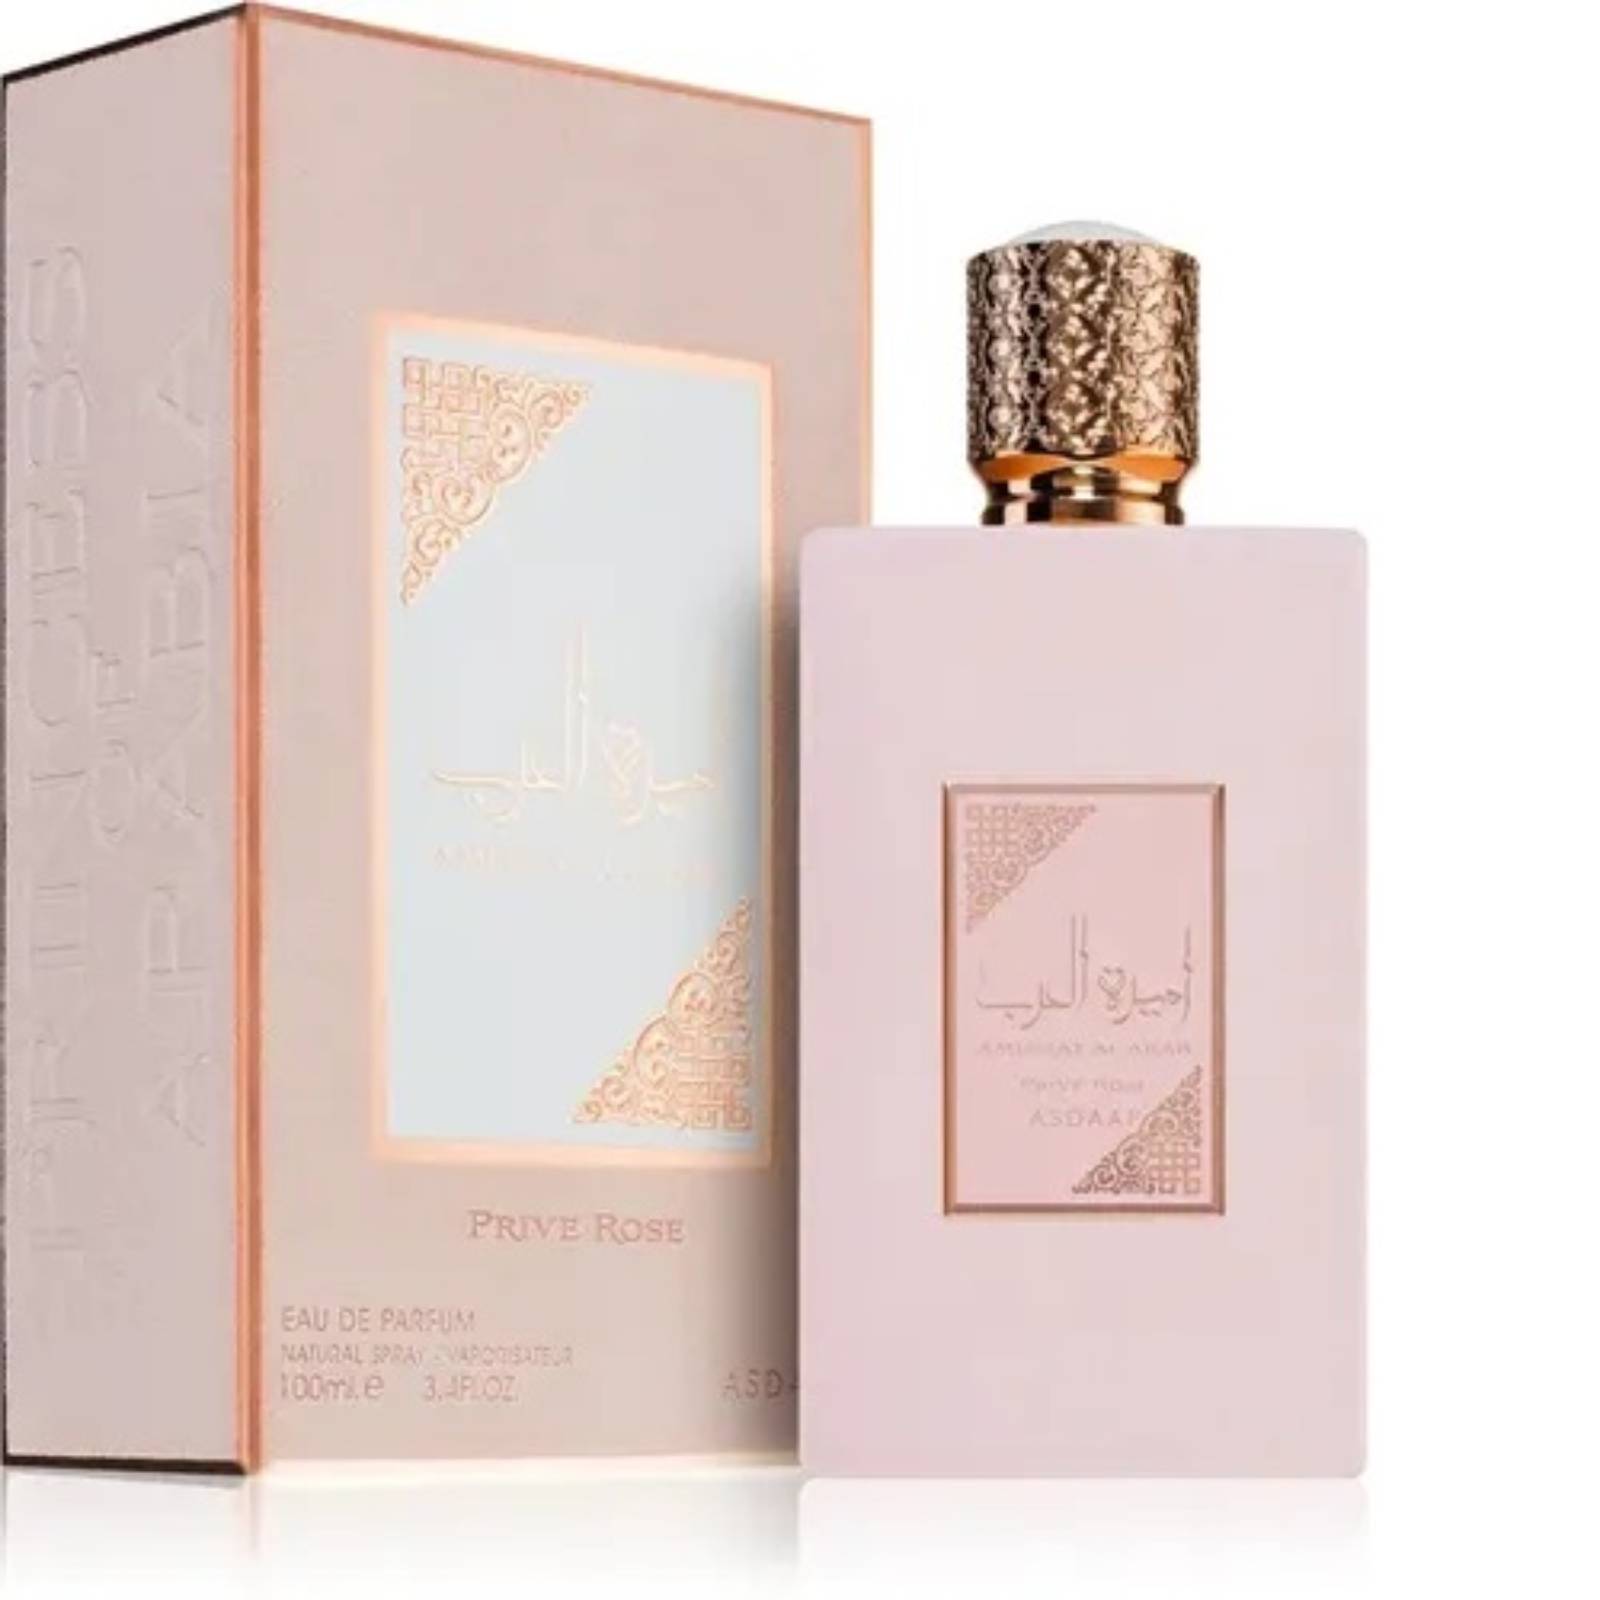 בושם לאישה Lattafa Perfume Ameerat Al Arab Prive Rose Eau de Parfum 100ml